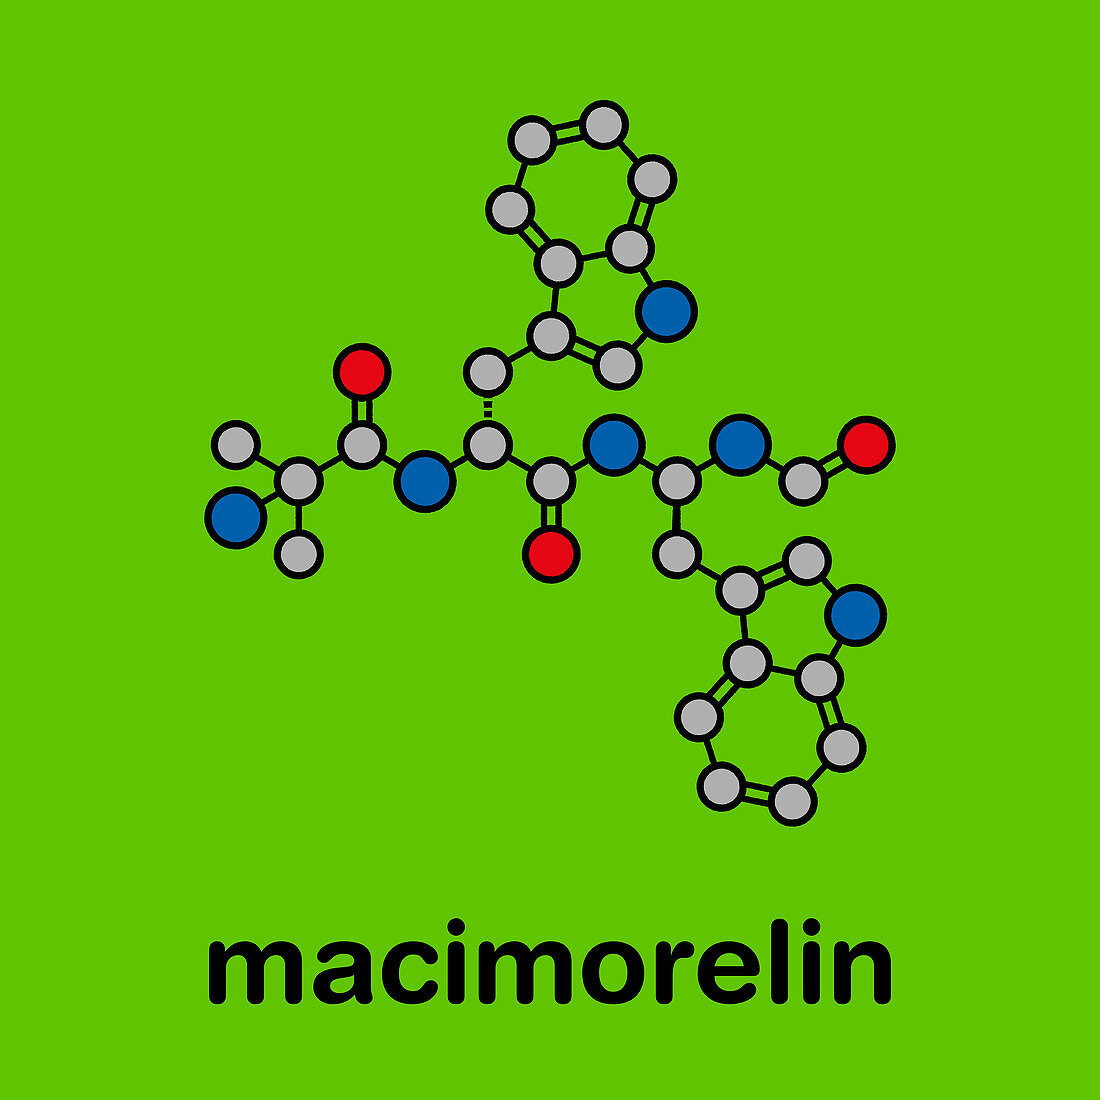 Macimorelin adult growth hormone diagnostic drug molecule